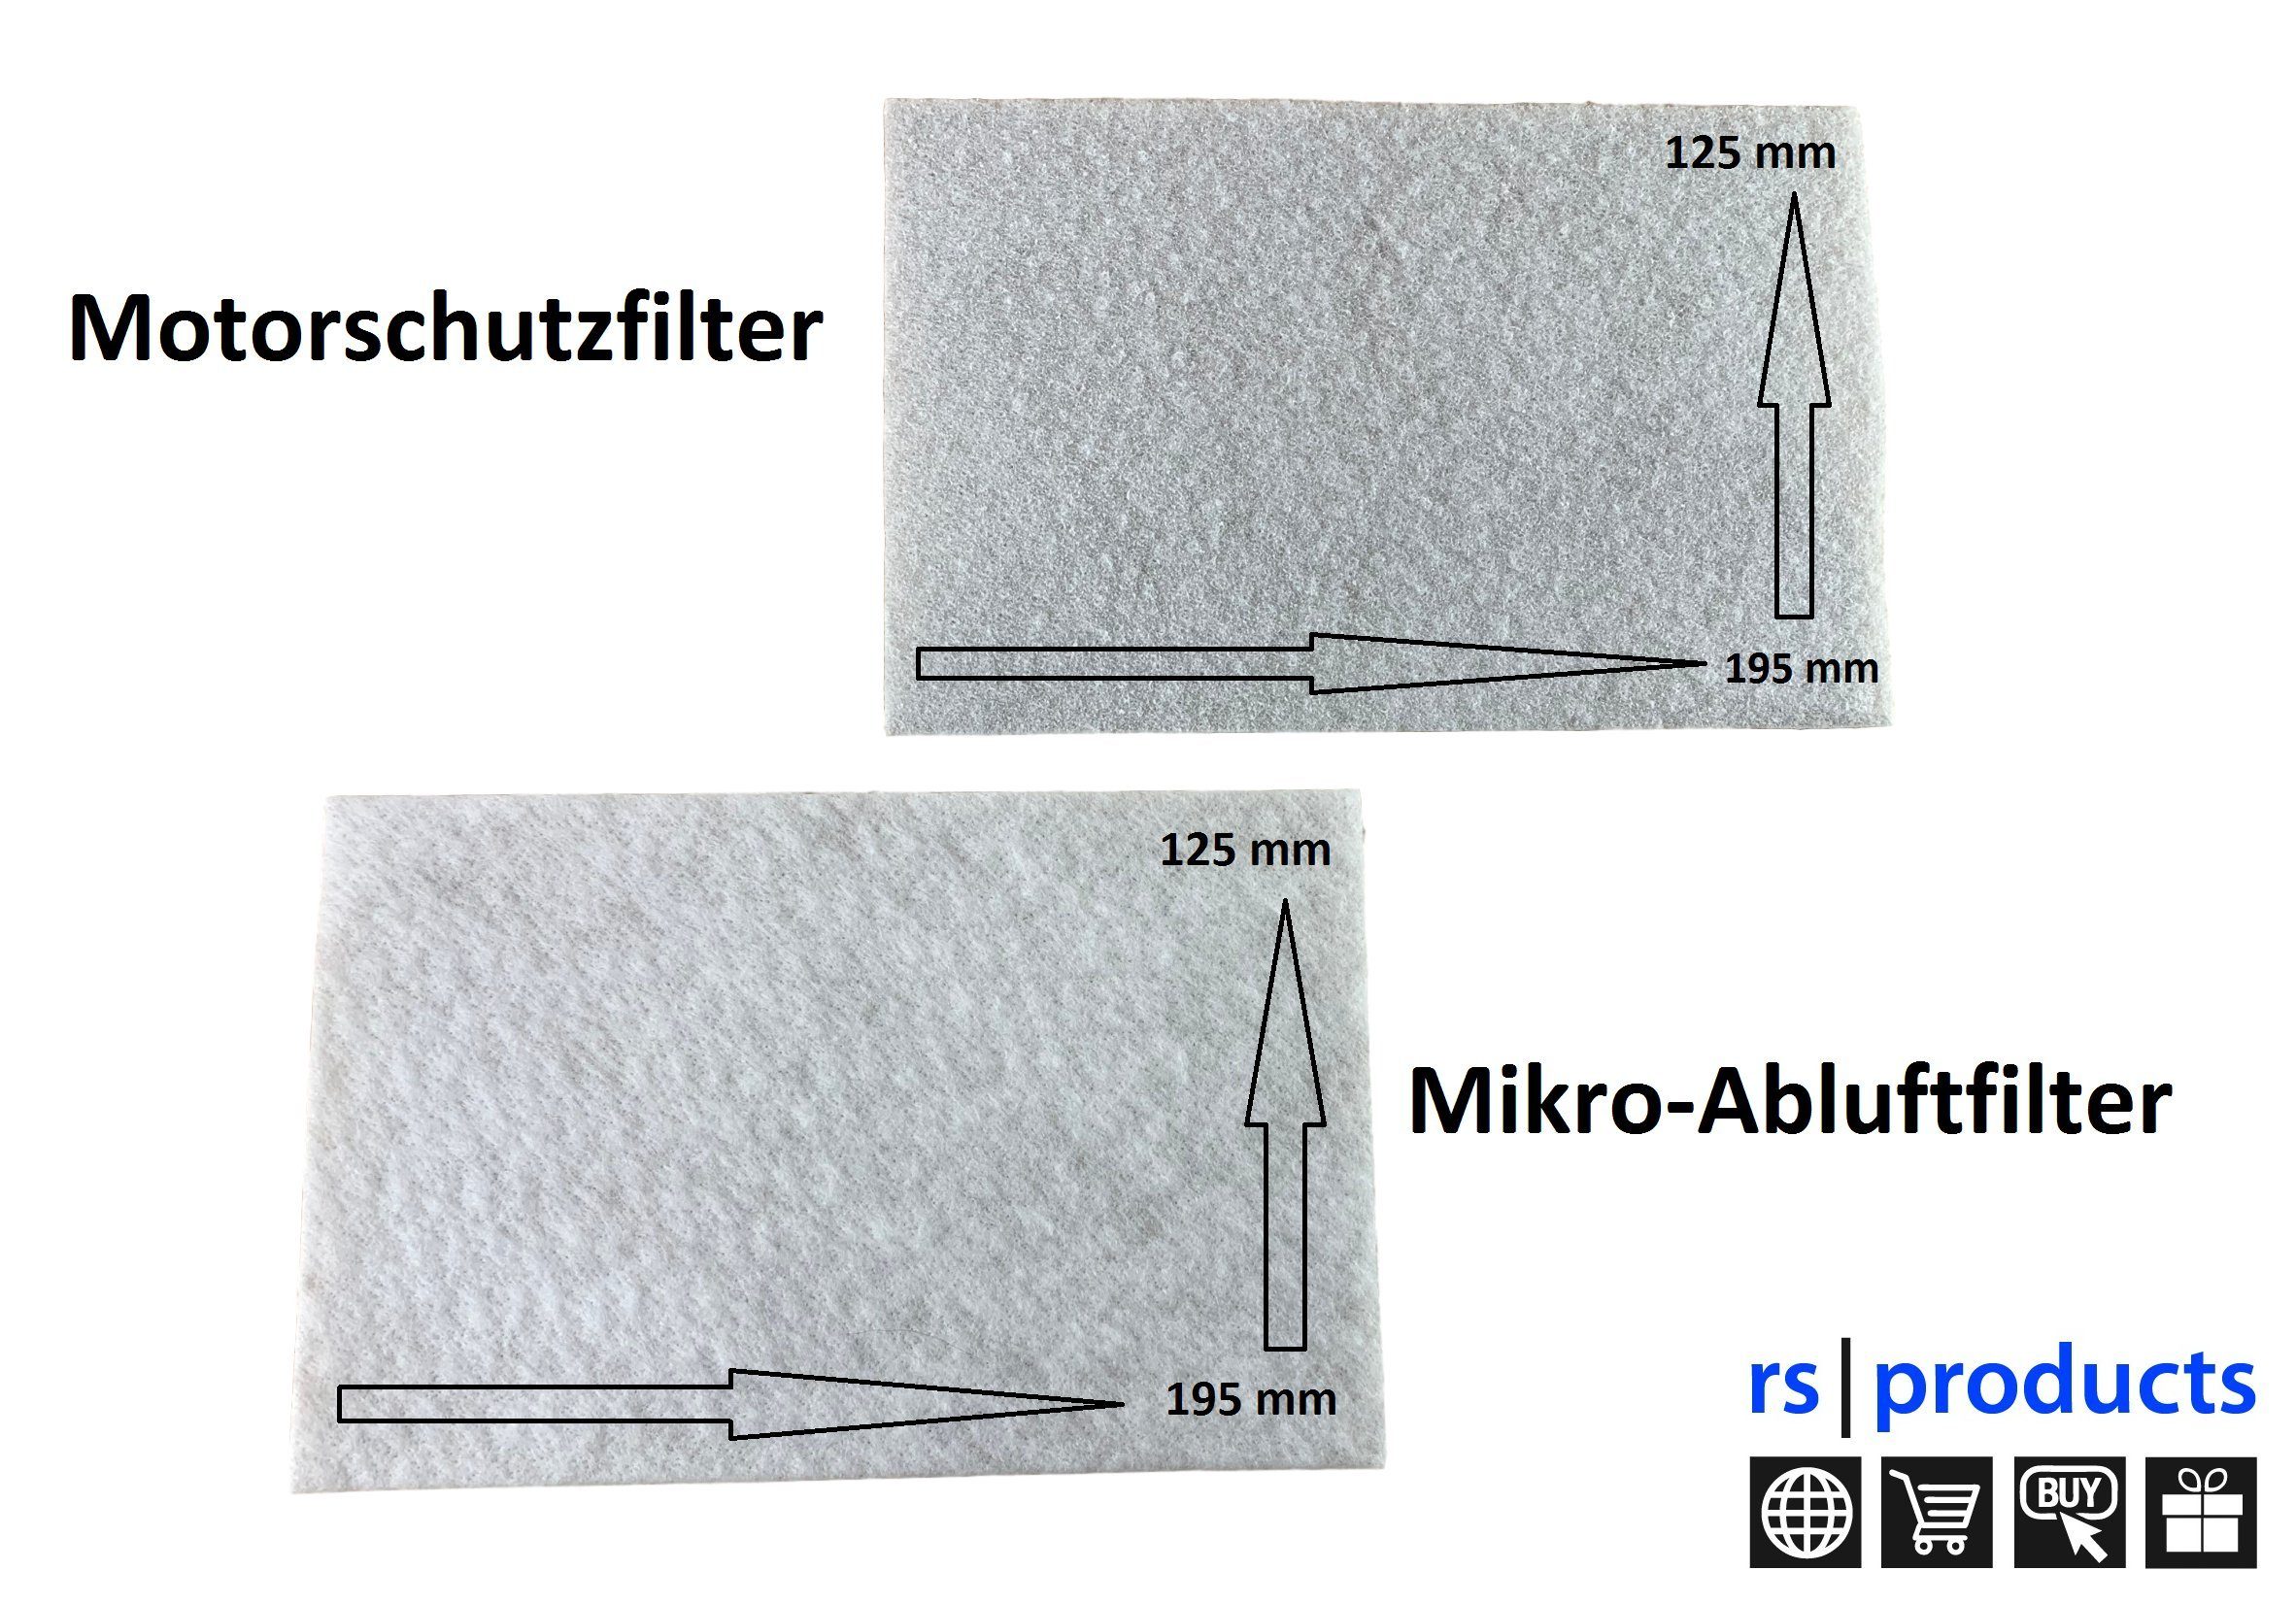 20x Motorschutzfilter mit Microfilter zuschneidbar Ersatz für Miele  Staubsauger